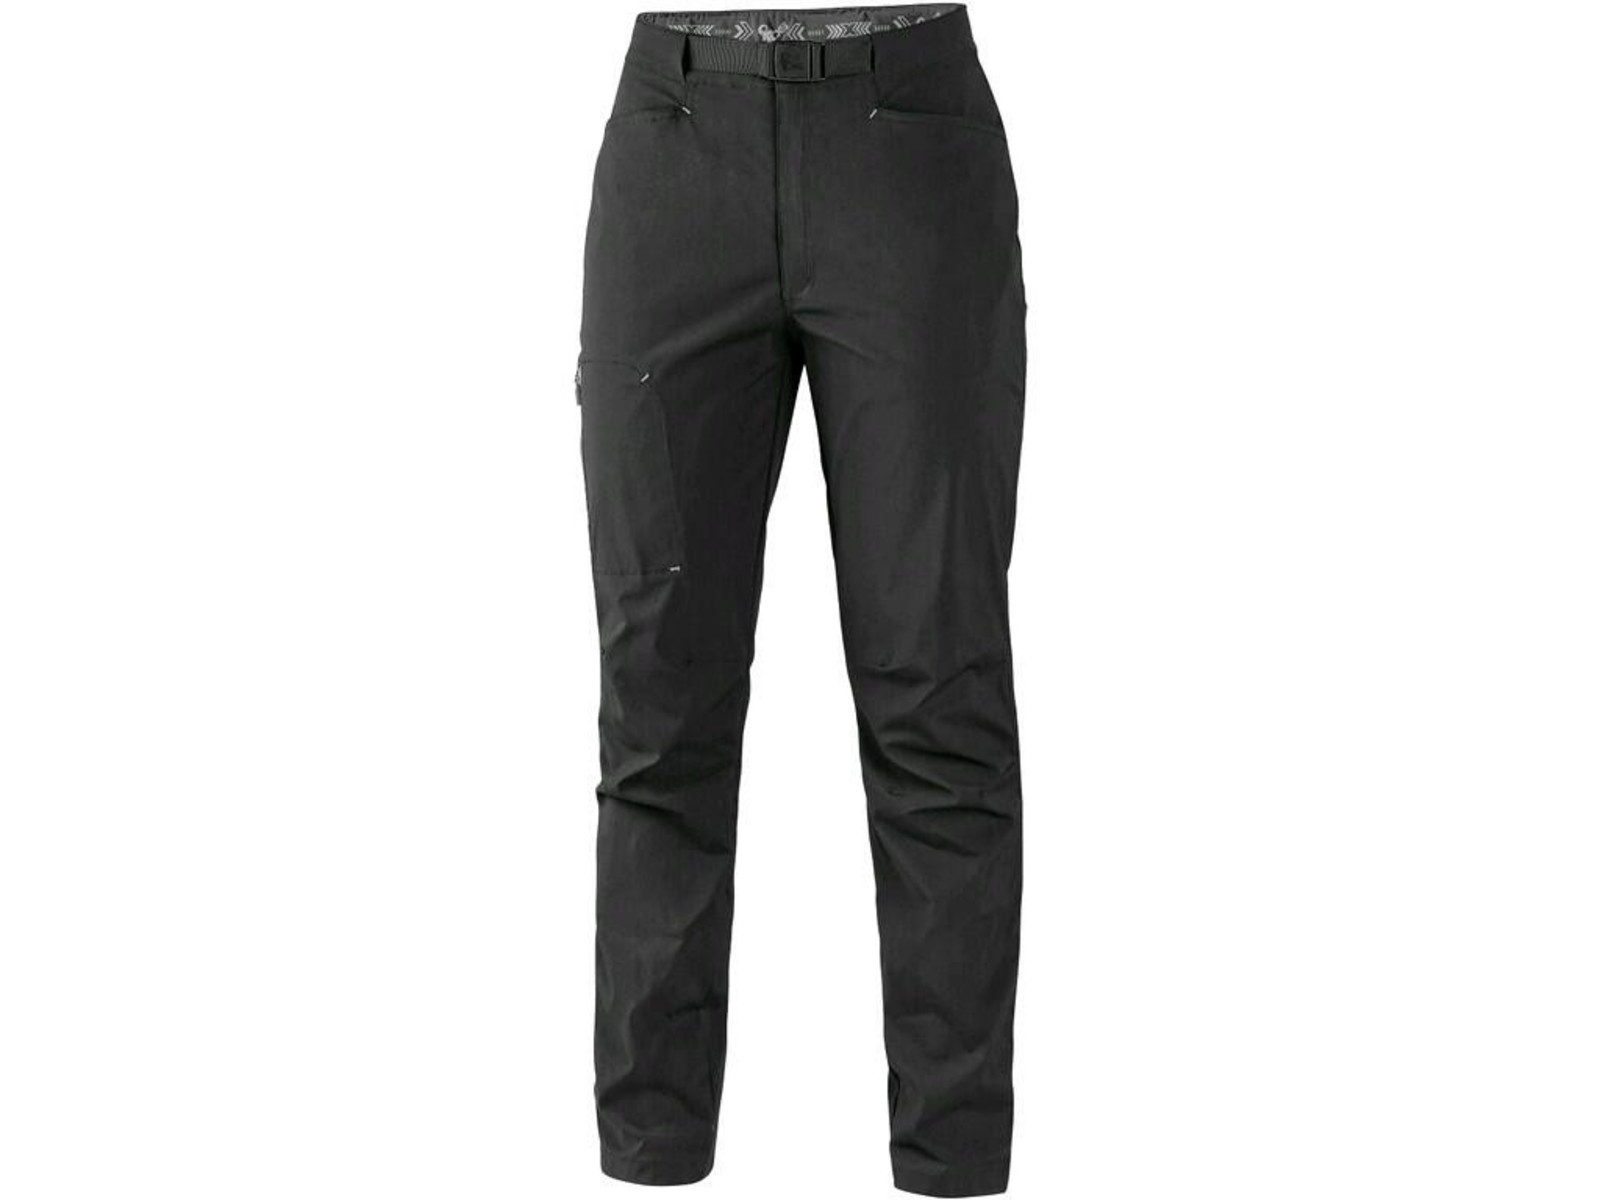 Dámske letné nohavice CXS Oregon - veľkosť: 48, farba: čierna/sivá